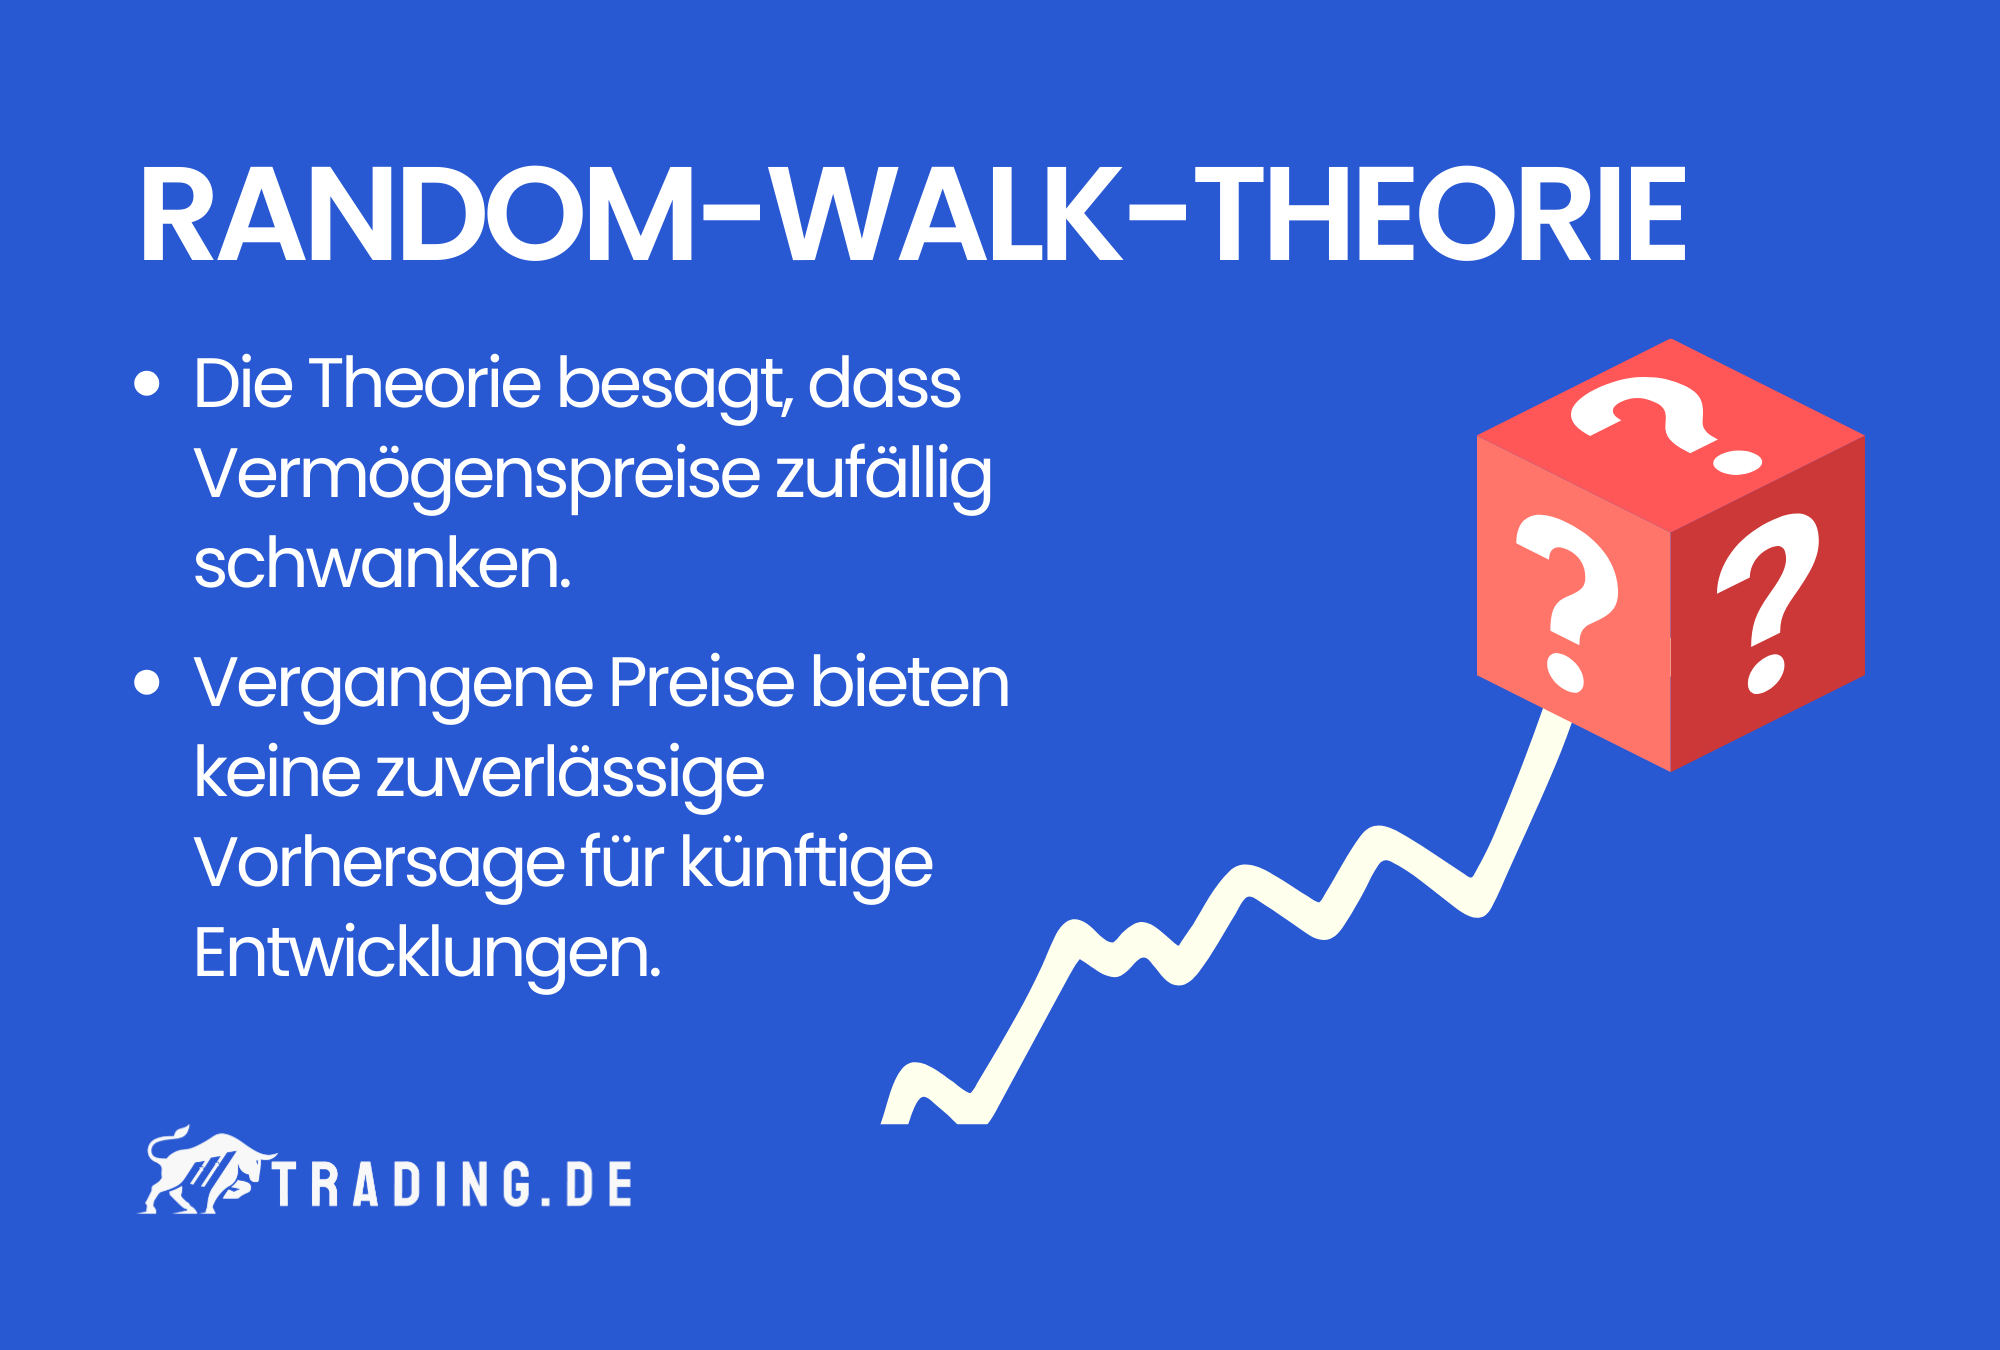 Random-Walk-Theorie Definition & Erklärung